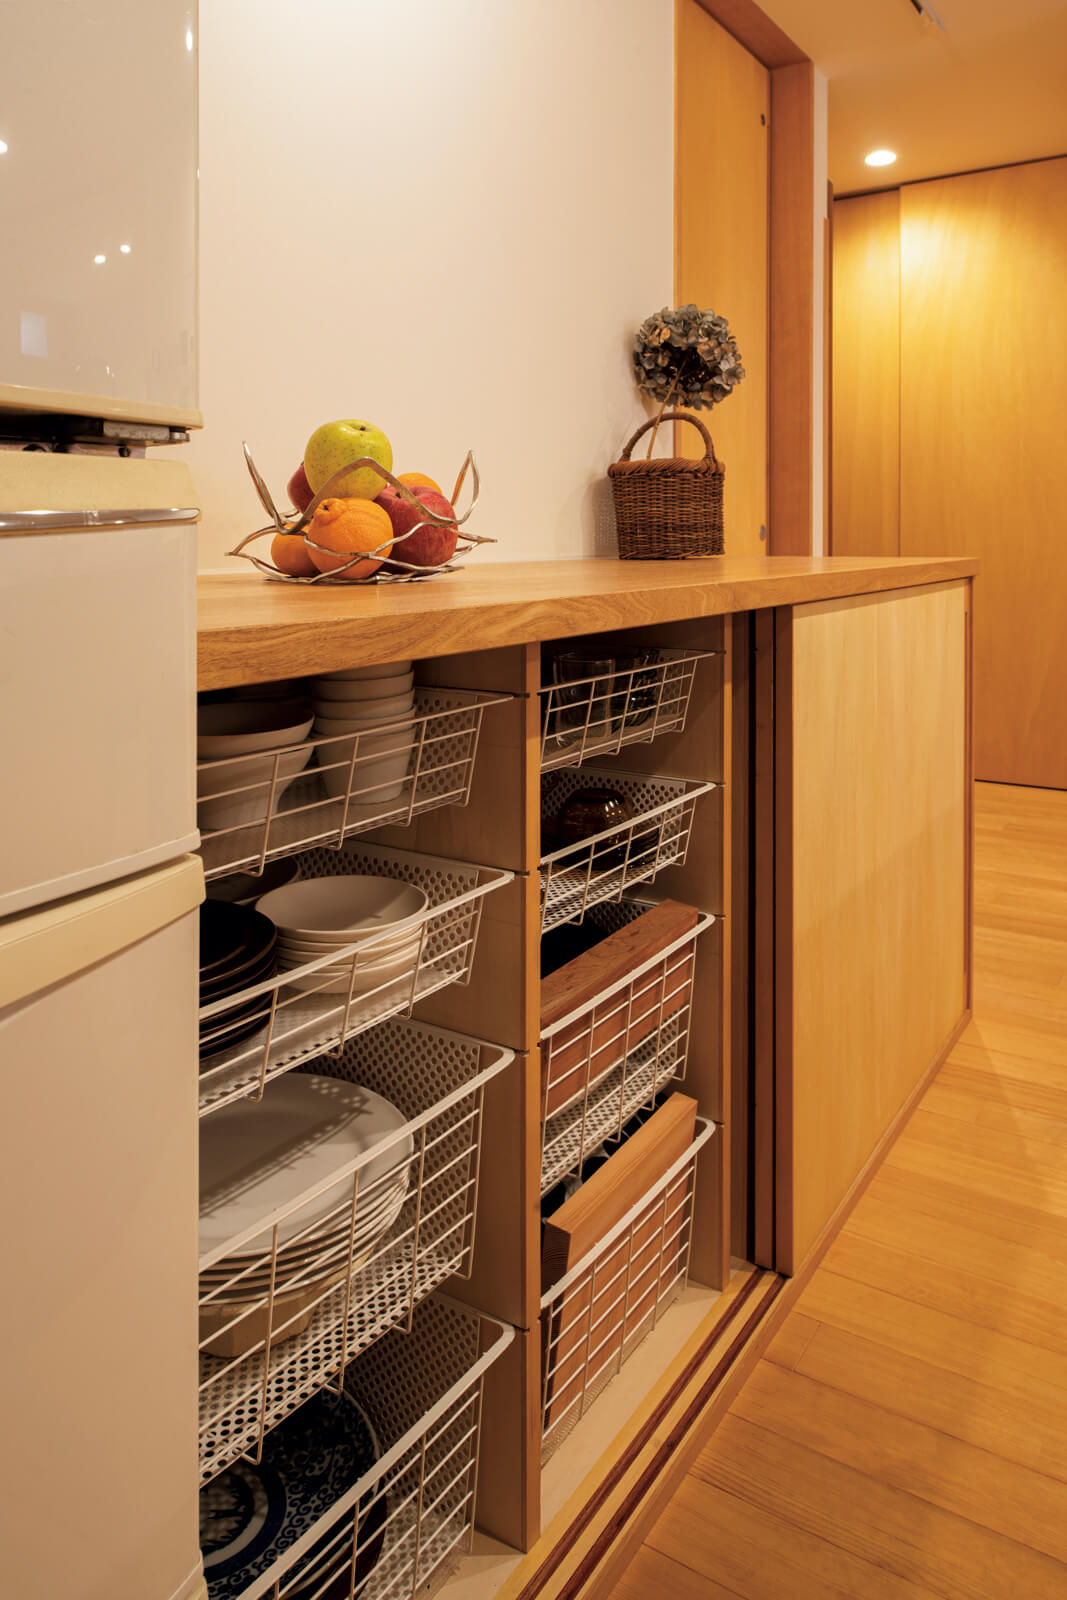 キッチンの背面収納の内部には4段の引き出しを造作。奥の物も取り出しやすい機能的な設計